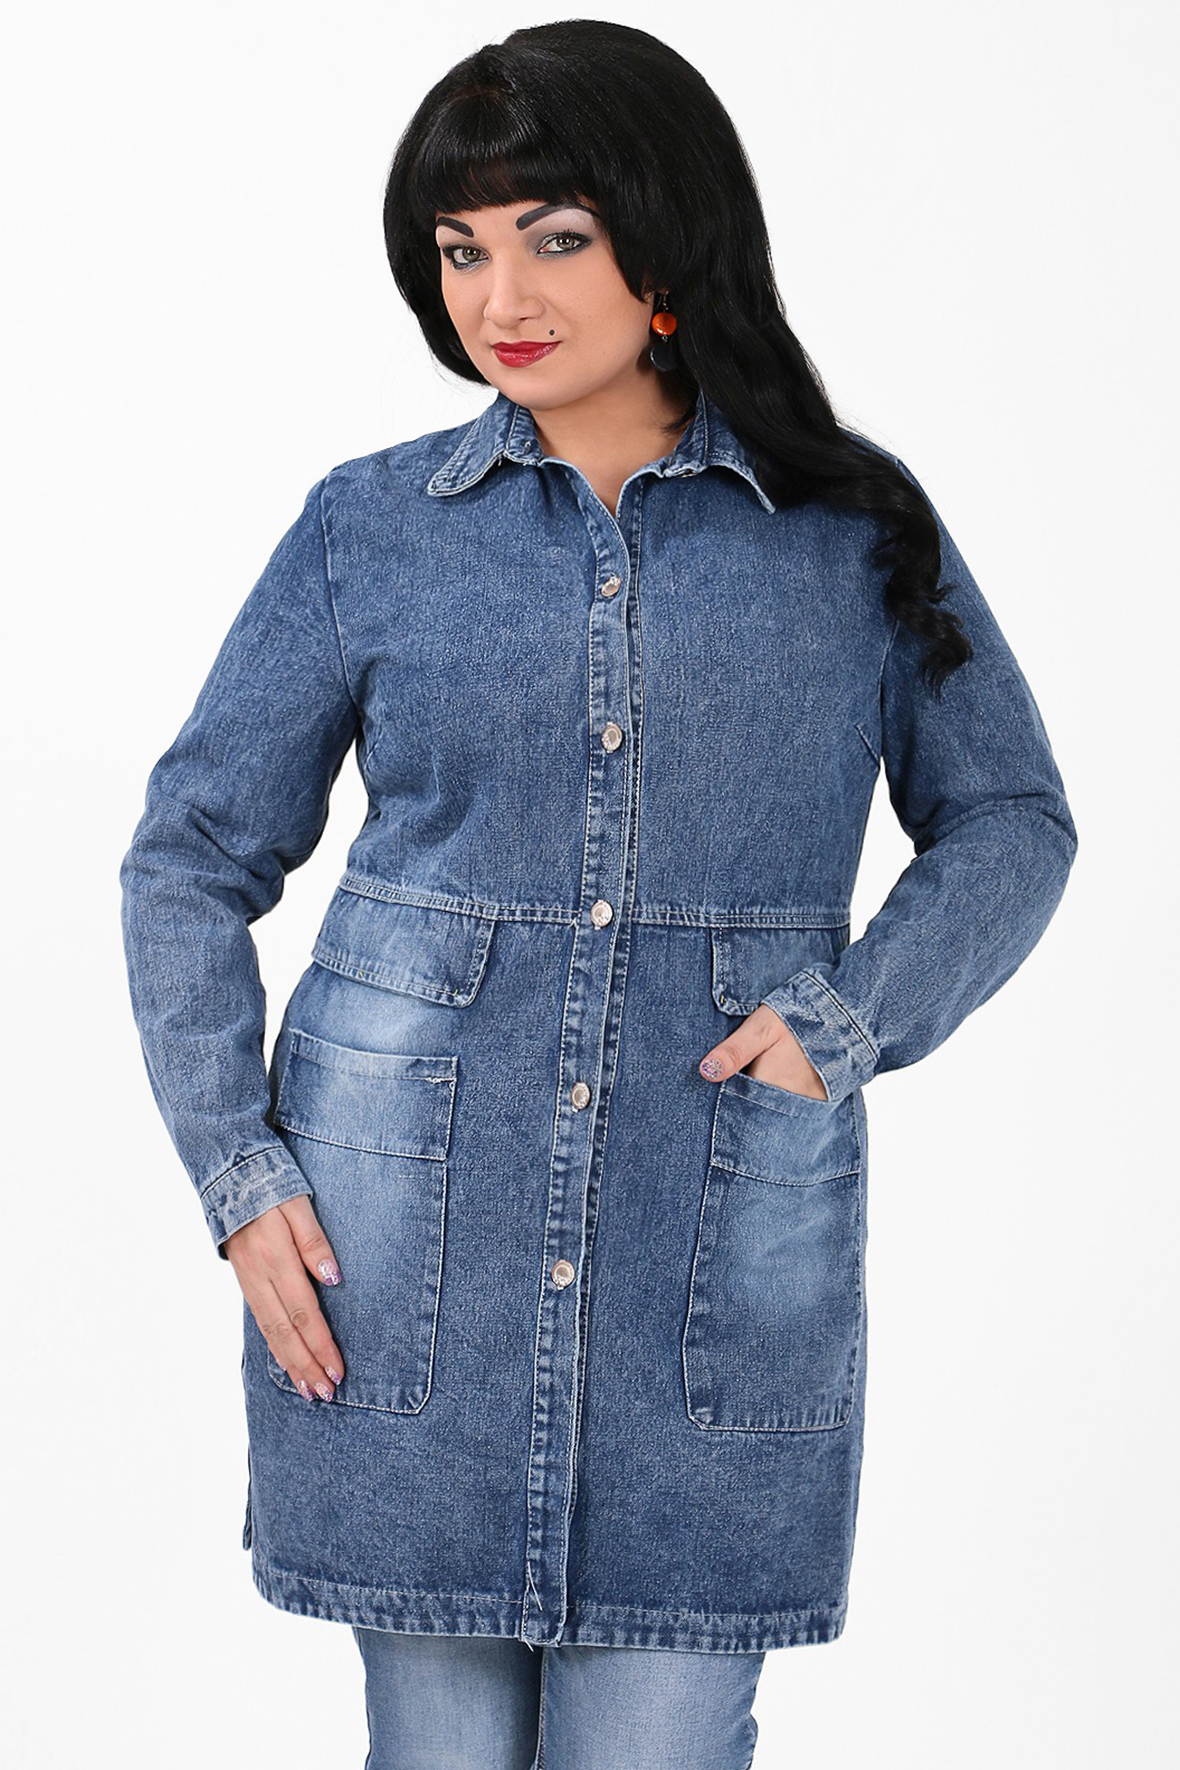 Удлиненная джинсовая куртка женская на валберис